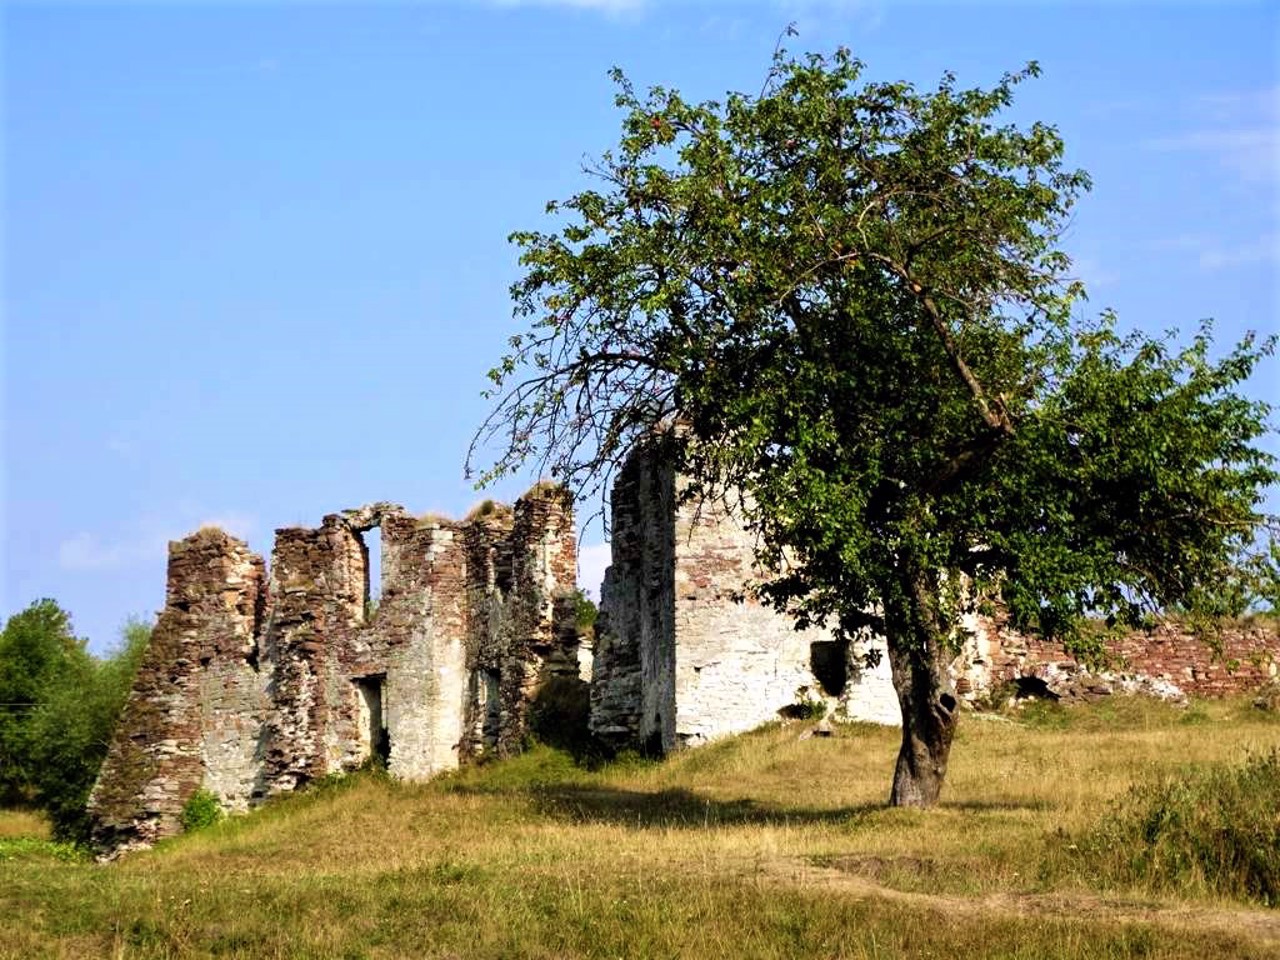 Tvorovsky Castle, Pidzamochok